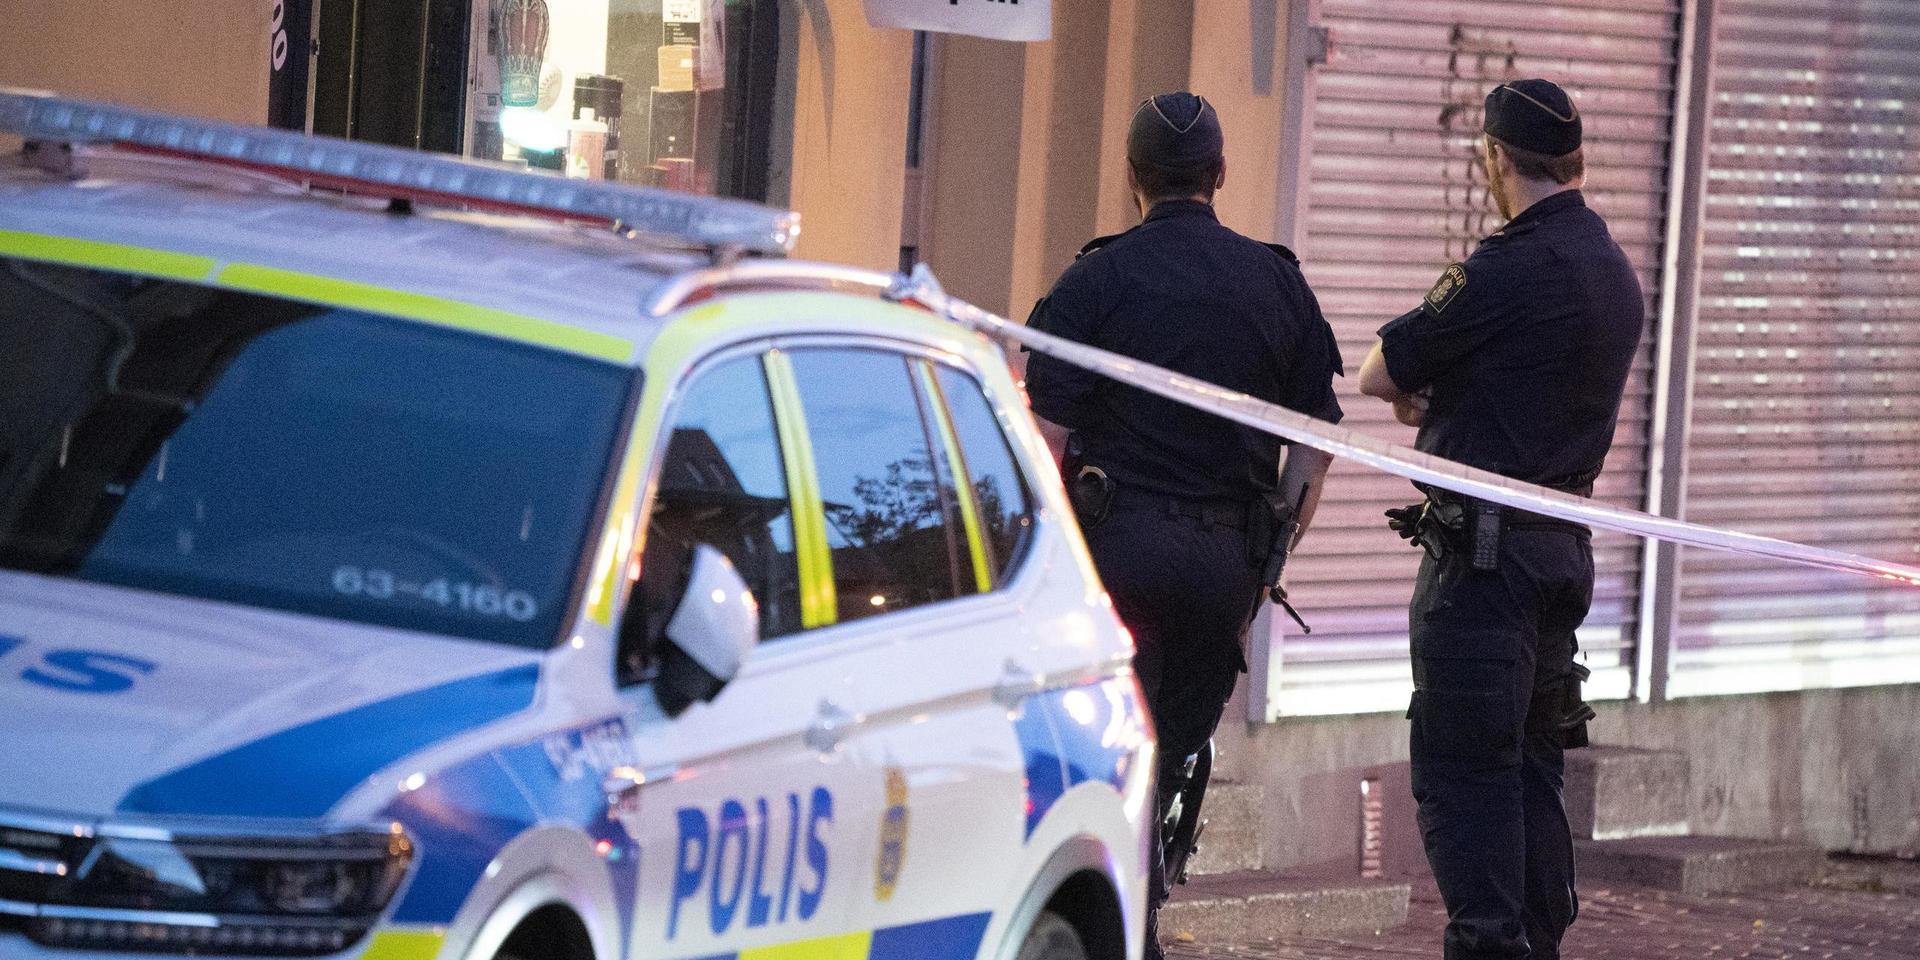 Polis och avspärrningar utanför en frisersalong på Södra Stenbocksgatan i Helsingborg efter att en yngre man förts till sjukhus i en privatbil. 